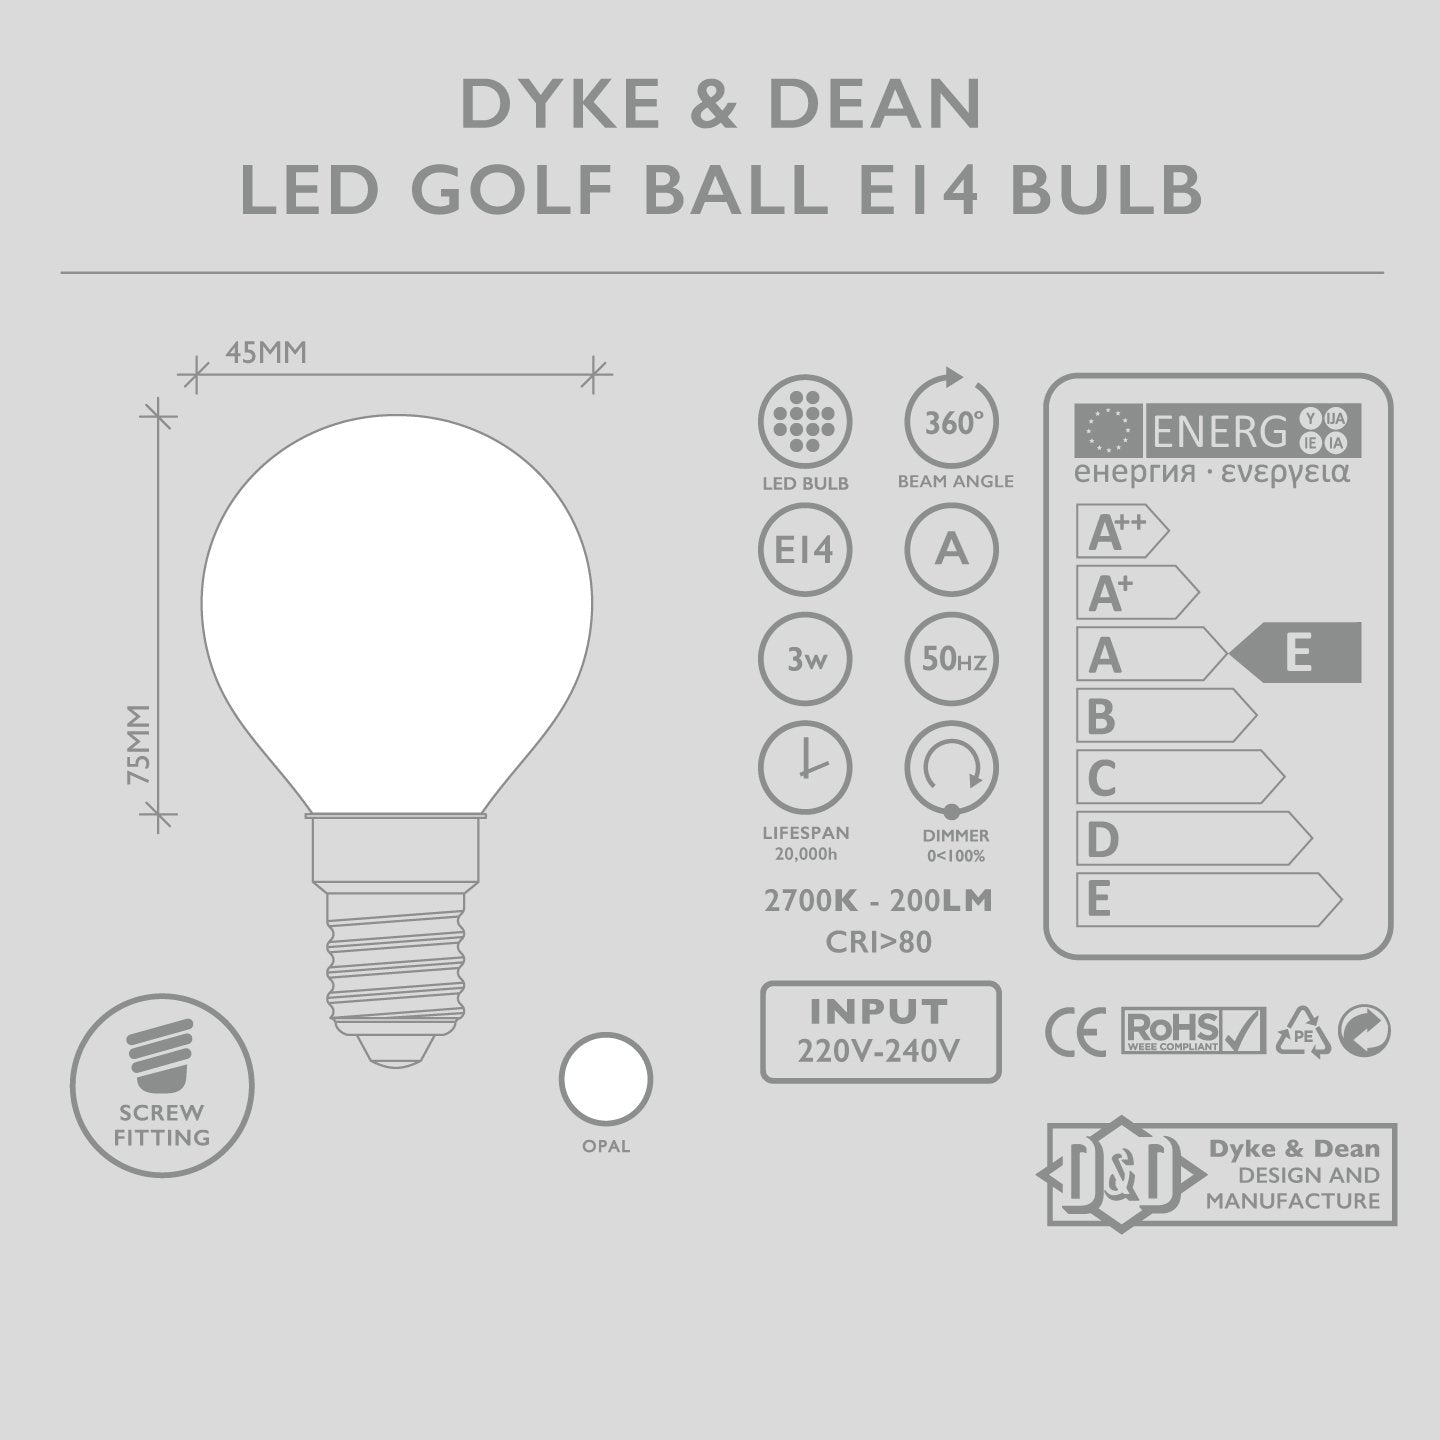 DYKE & DEAN LED GOLF BALL OPAL E14 BULB - DYKE & DEAN